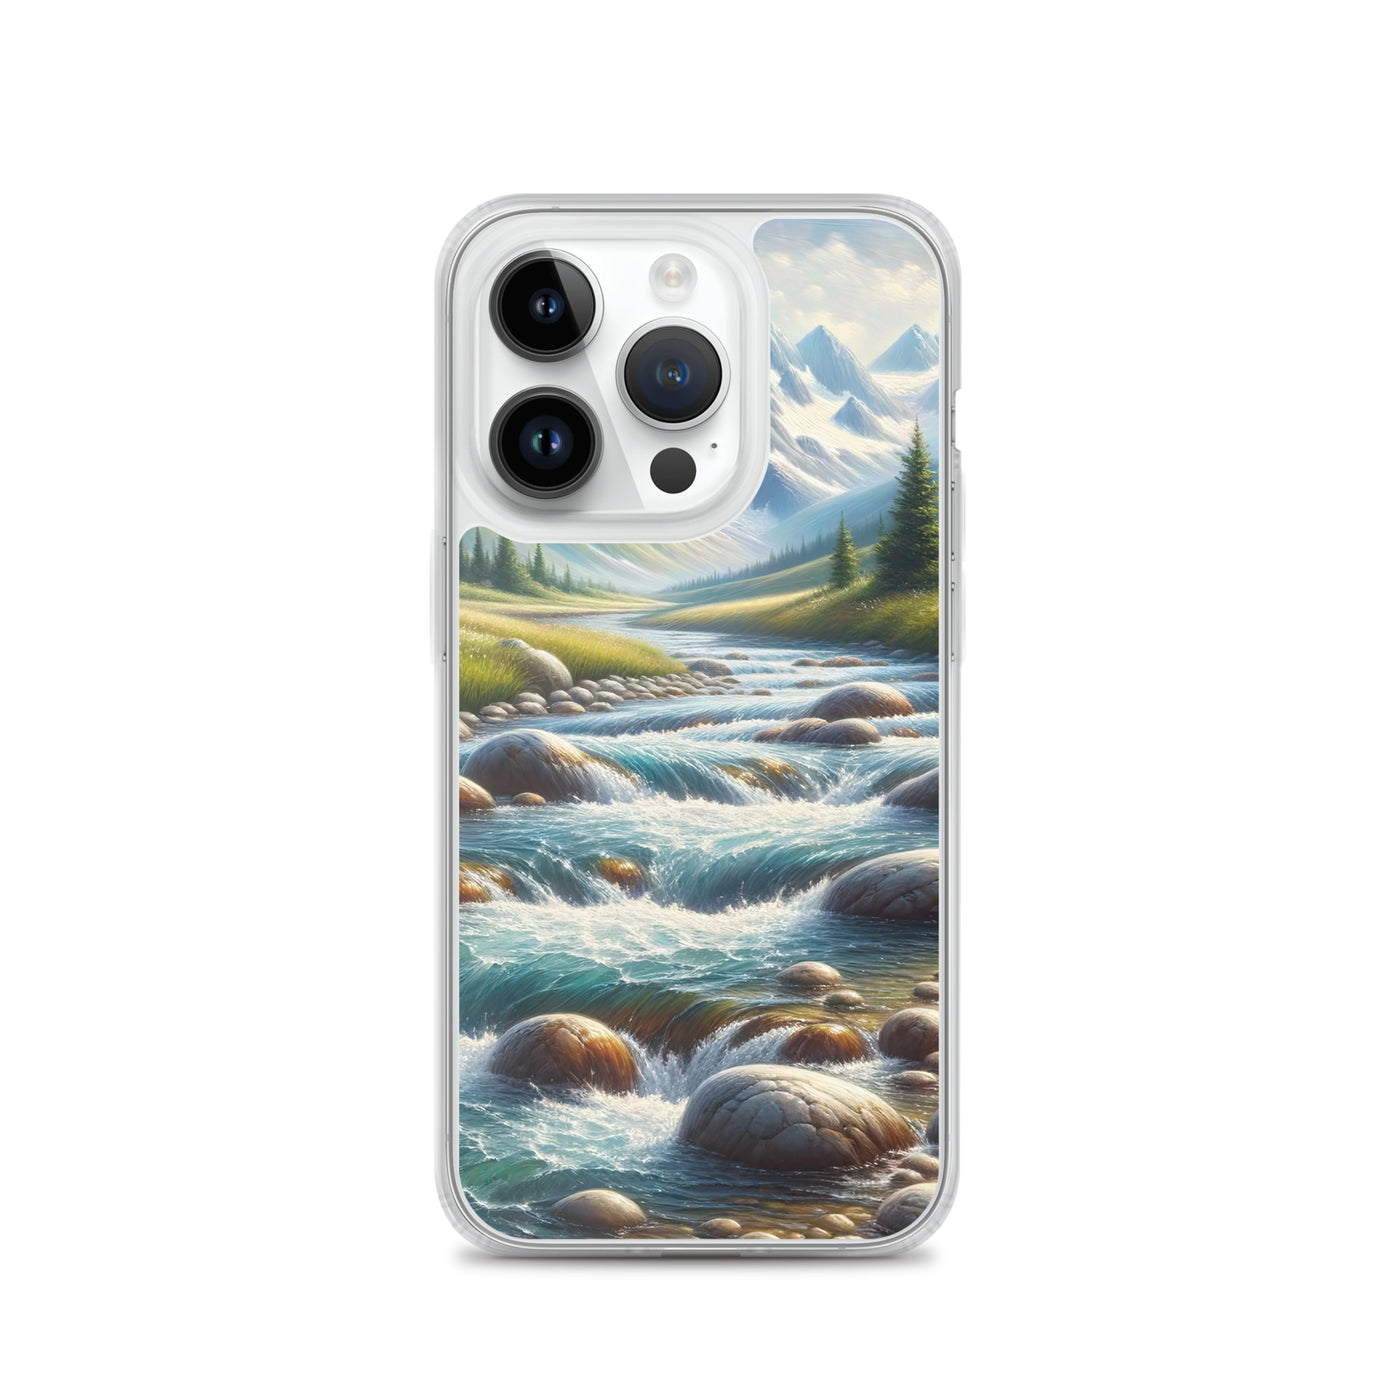 Ölgemälde eines Gebirgsbachs durch felsige Landschaft - iPhone Schutzhülle (durchsichtig) berge xxx yyy zzz iPhone 14 Pro